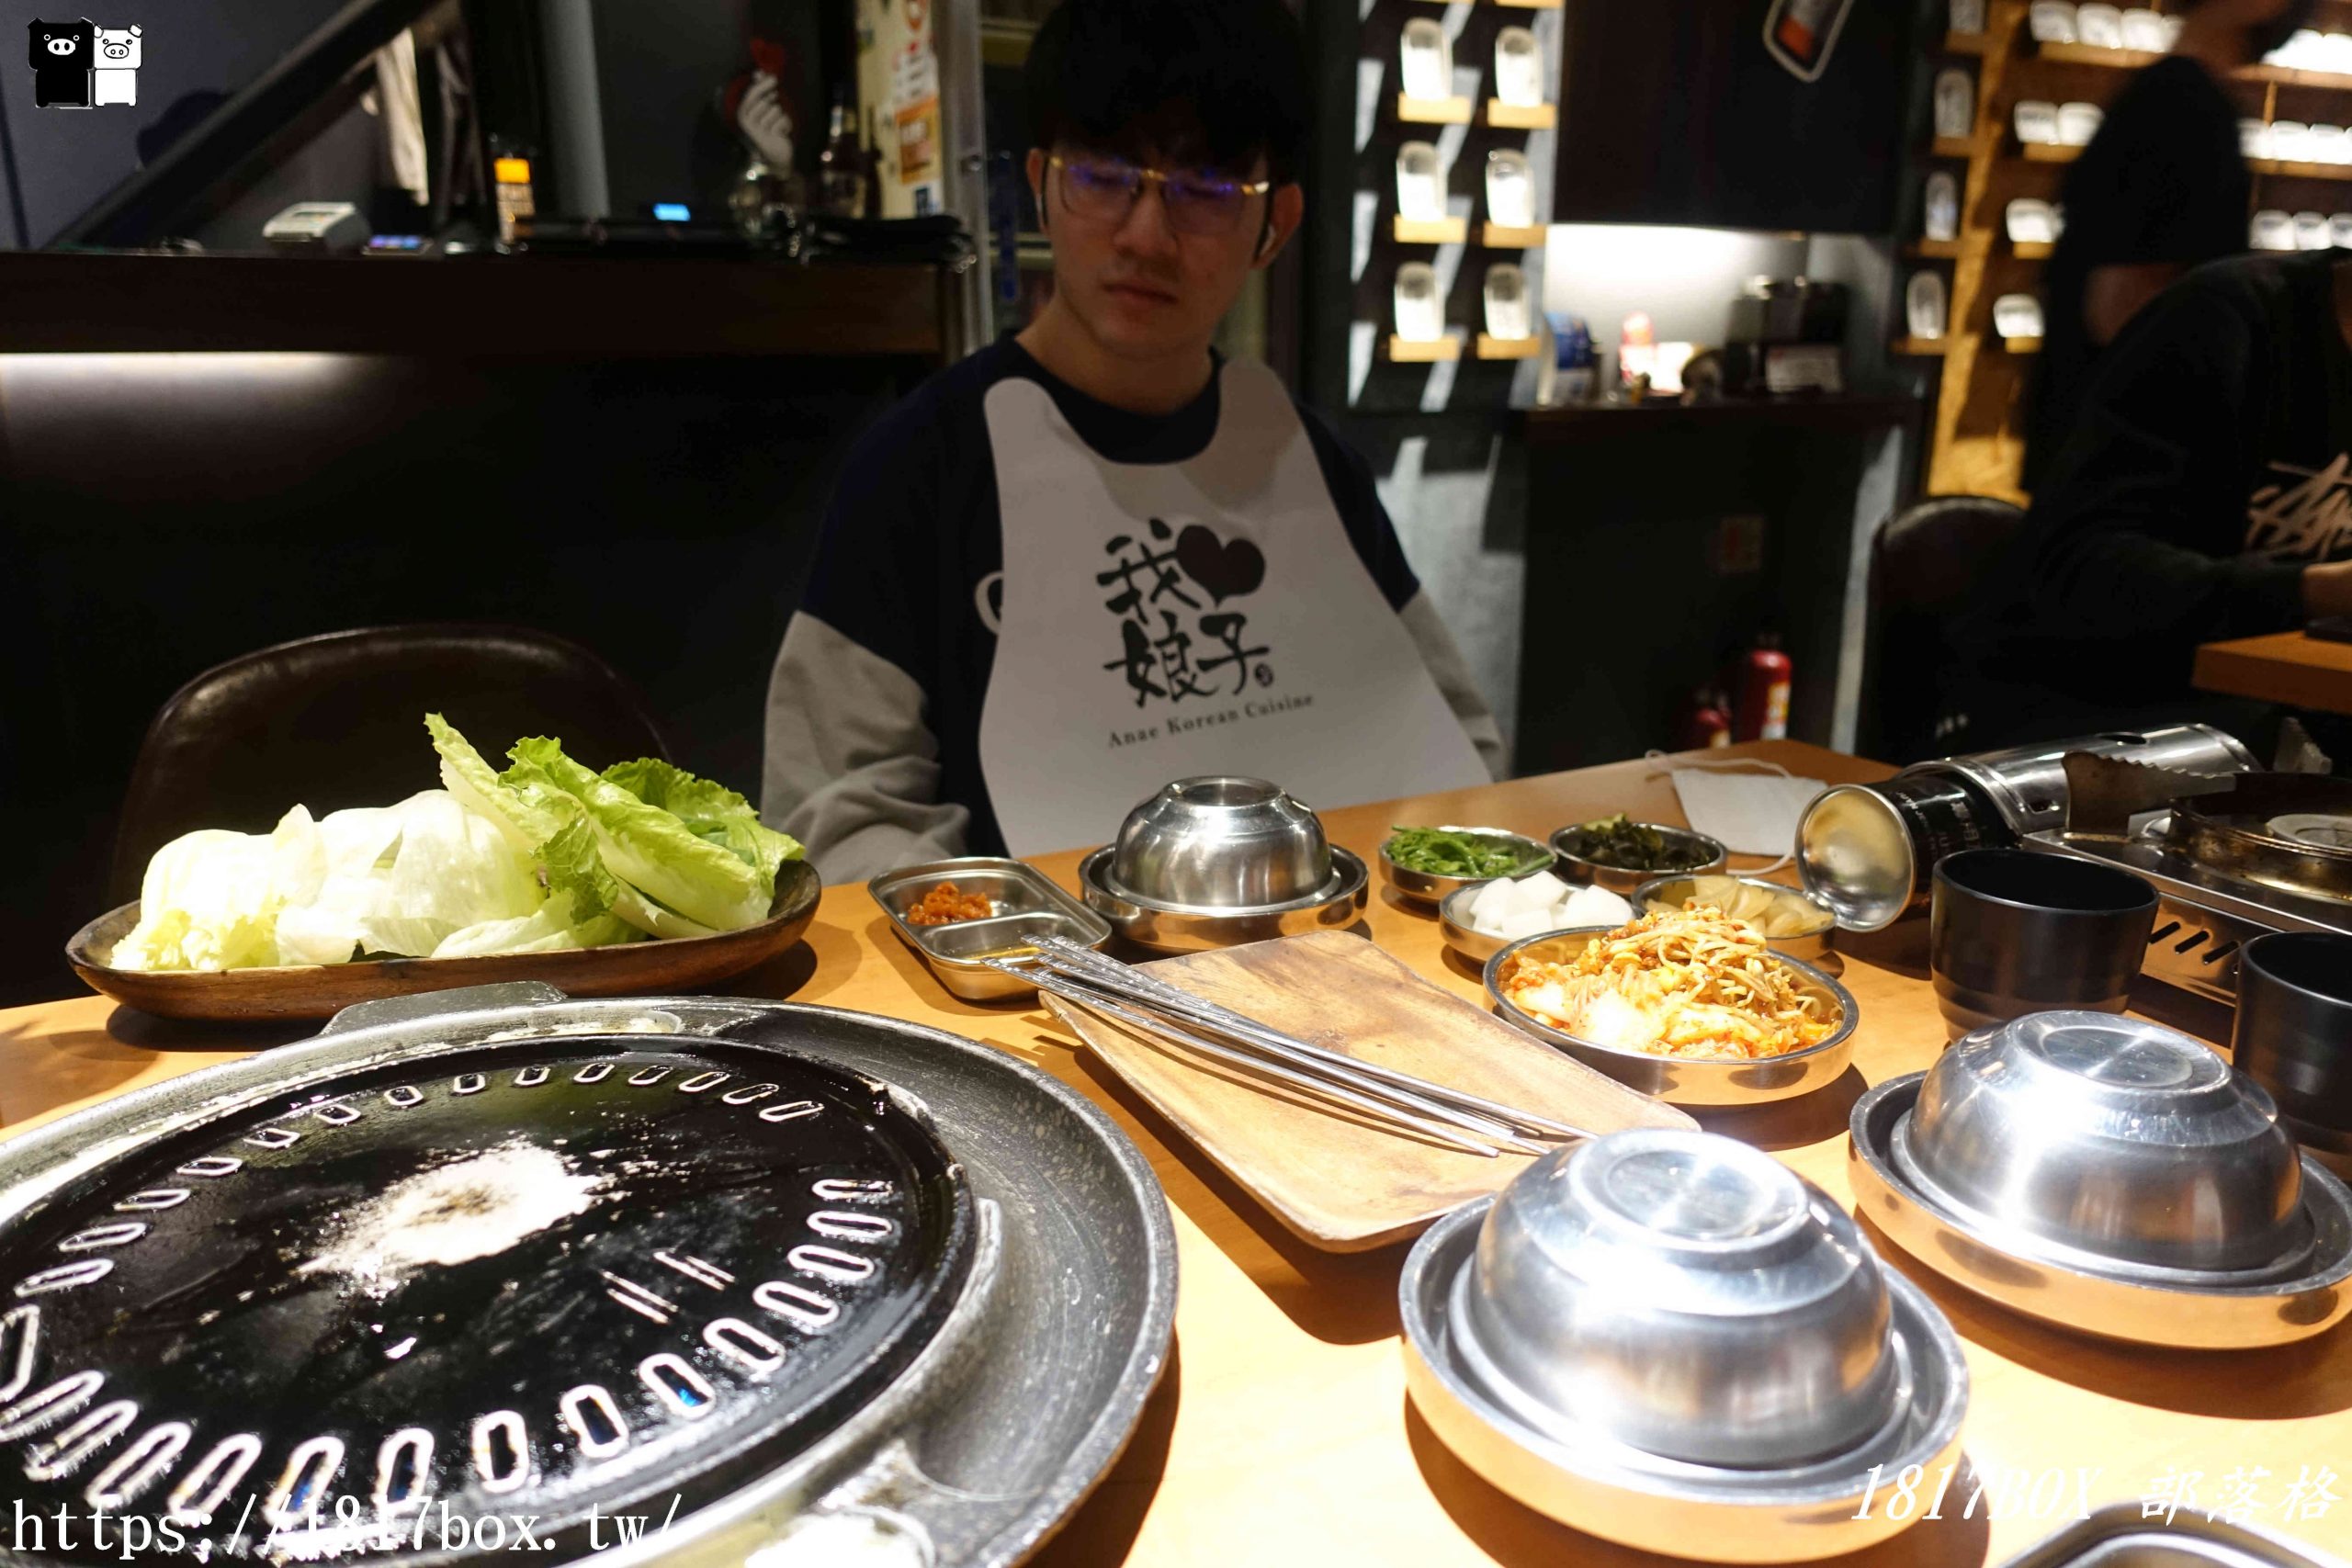 【台北。松山】娘子韓食-韓式燒肉-市民總店。小八色烤肉。桌邊烤肉服務